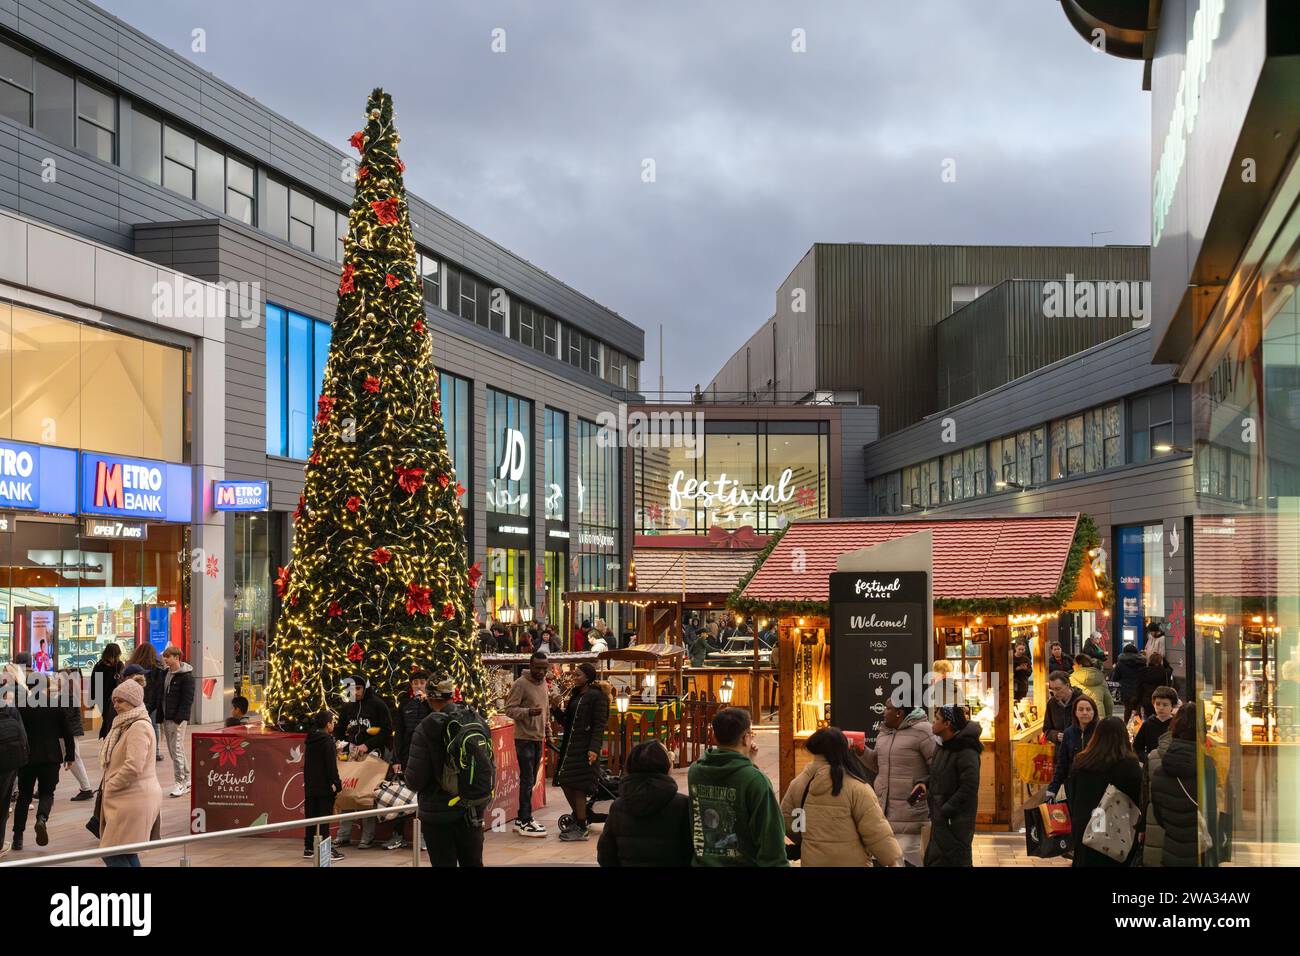 Negozi natalizi, bancarelle del mercato e albero di Natale presso il centro commerciale Malls di fronte al Festival Place al tramonto. Basingstoke, Regno Unito Foto Stock